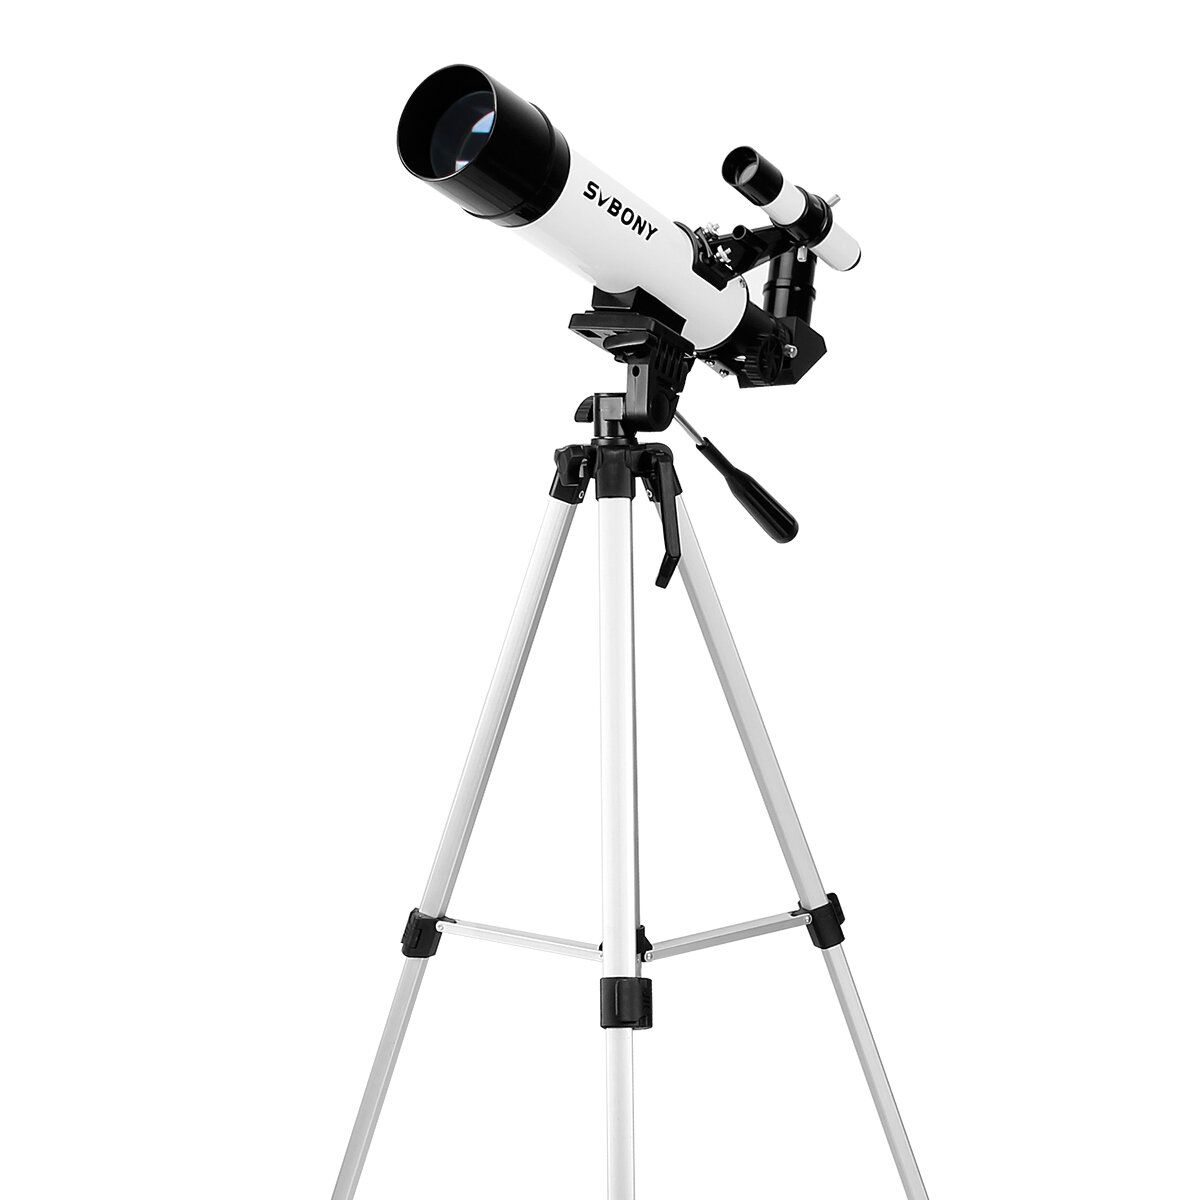 Αστρονομικό τηλεσκόπιο SVBONY SV25 με φακό Barlow 3X, οπτικό εντοπιστή πουλιών και μονόκολο με τρίποδο